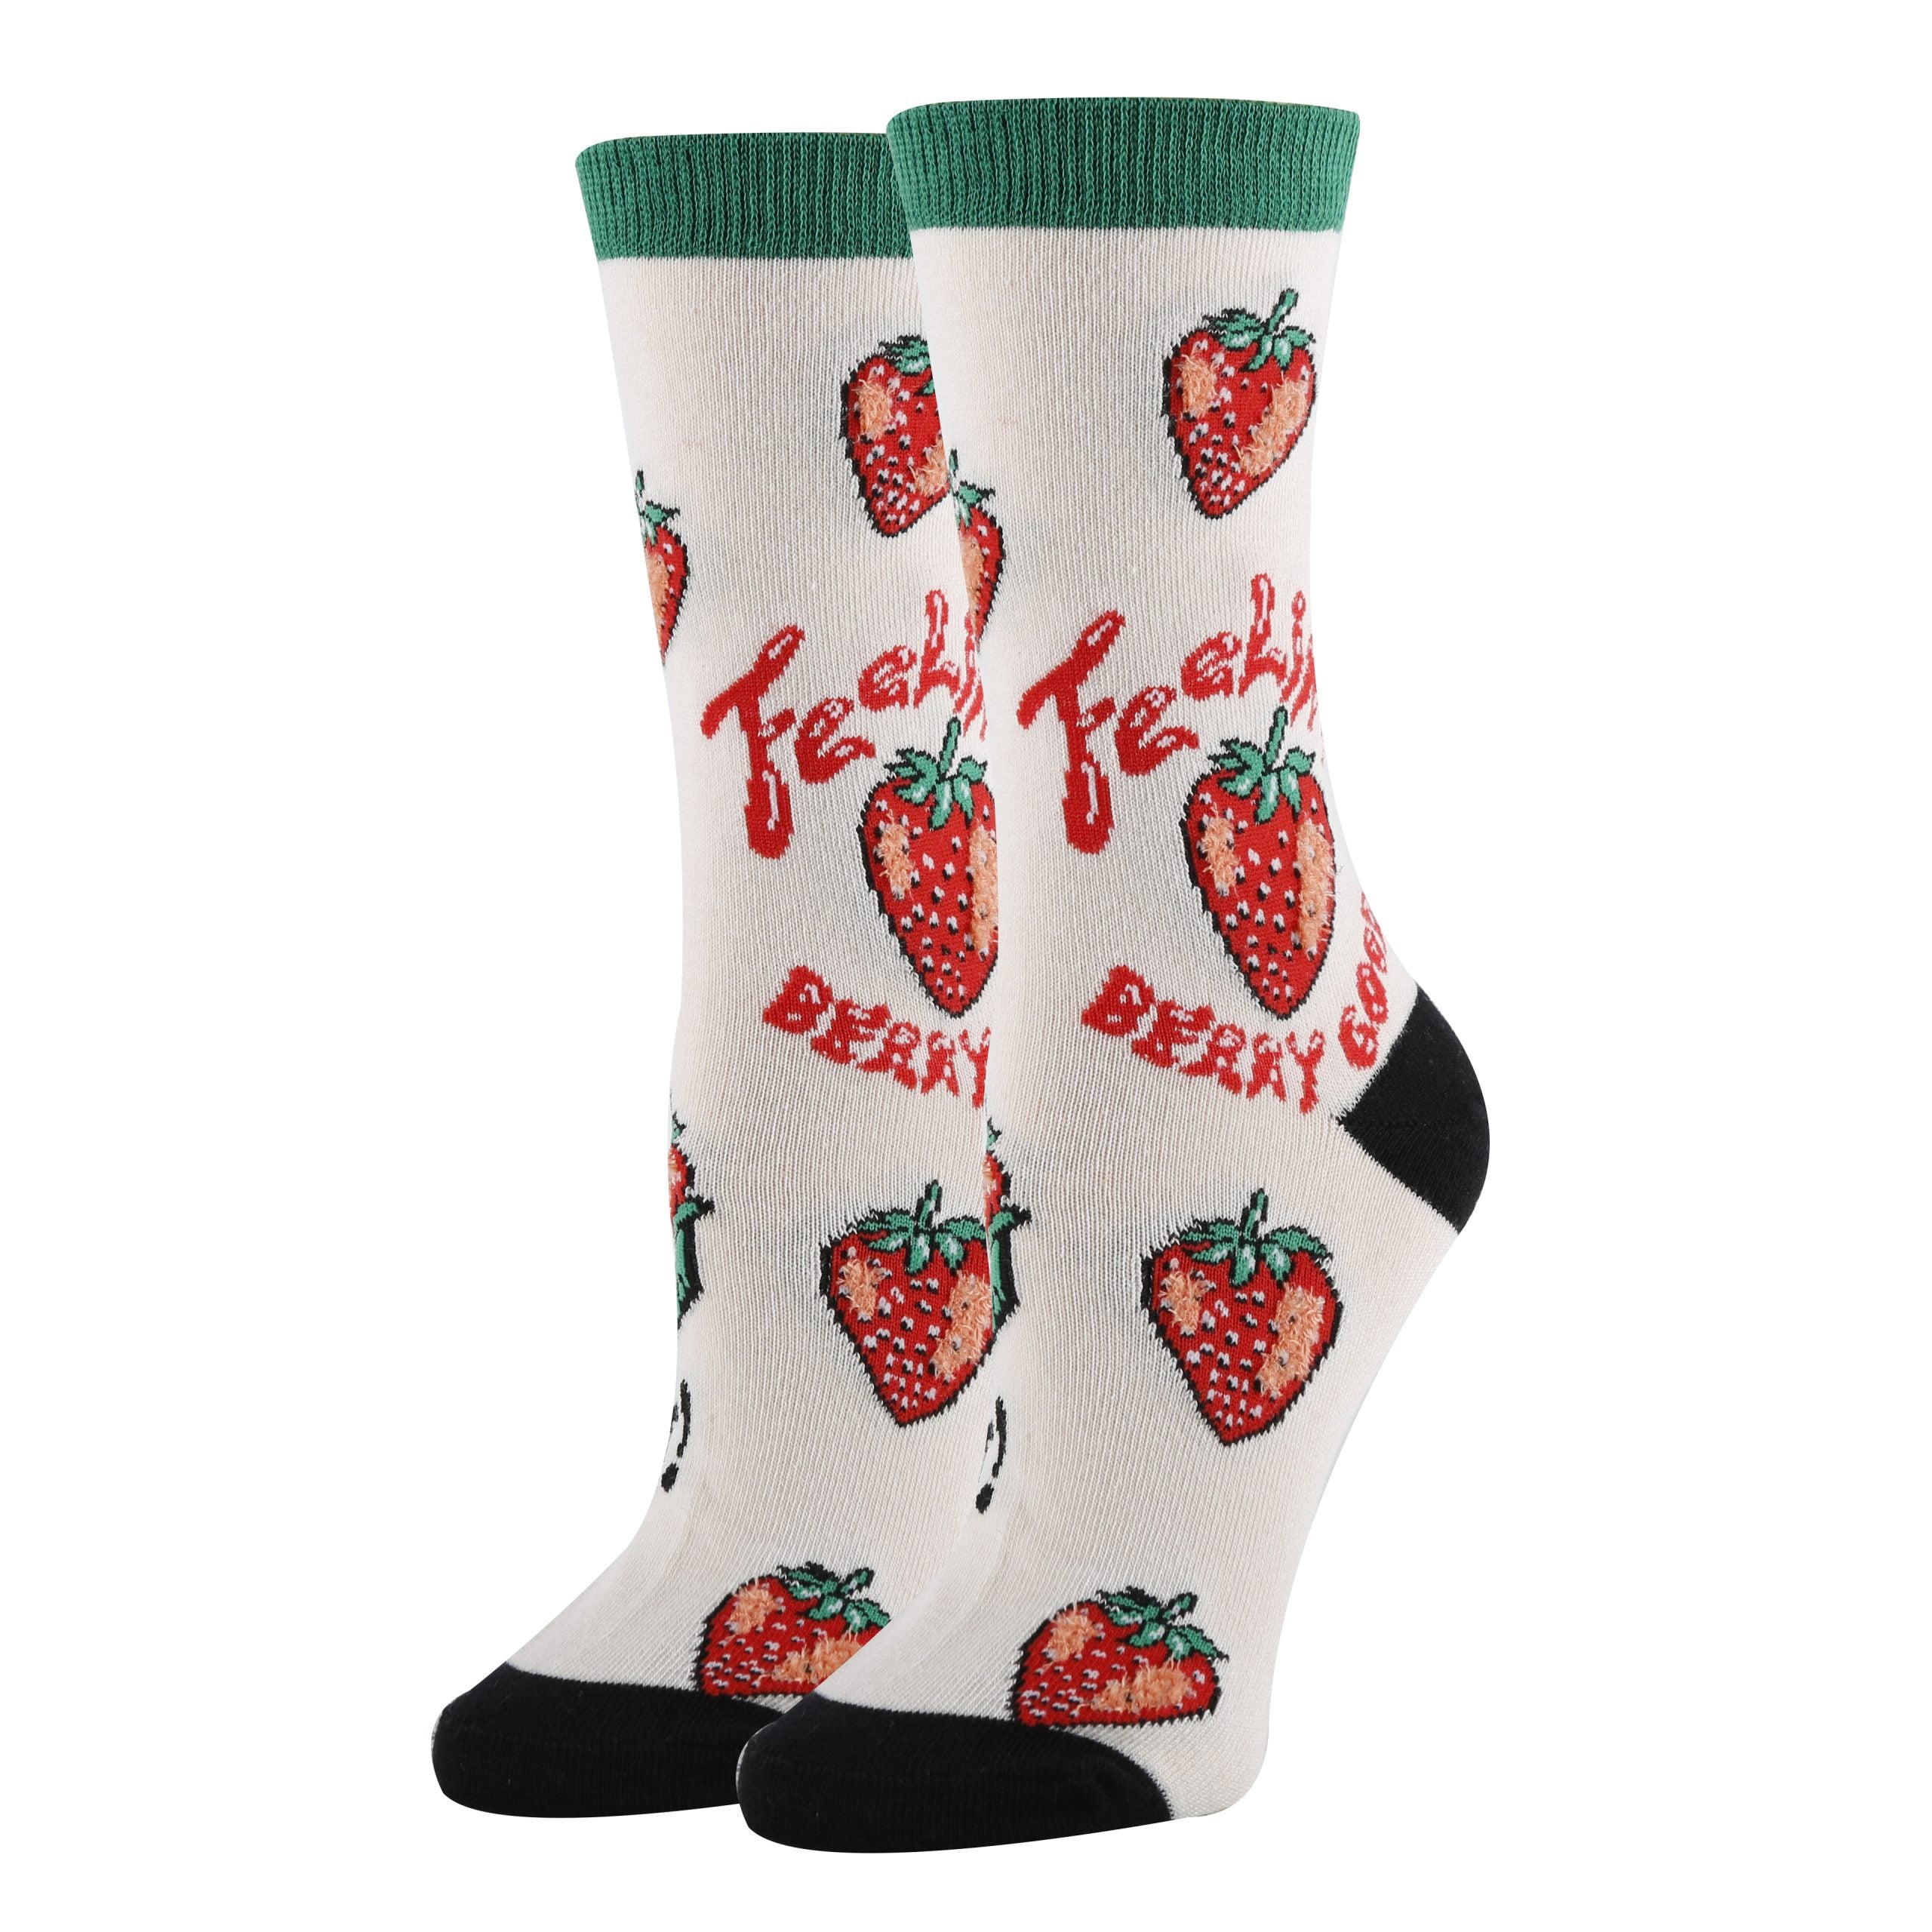 Berry Good Socks | Funny Crew Socks for Women